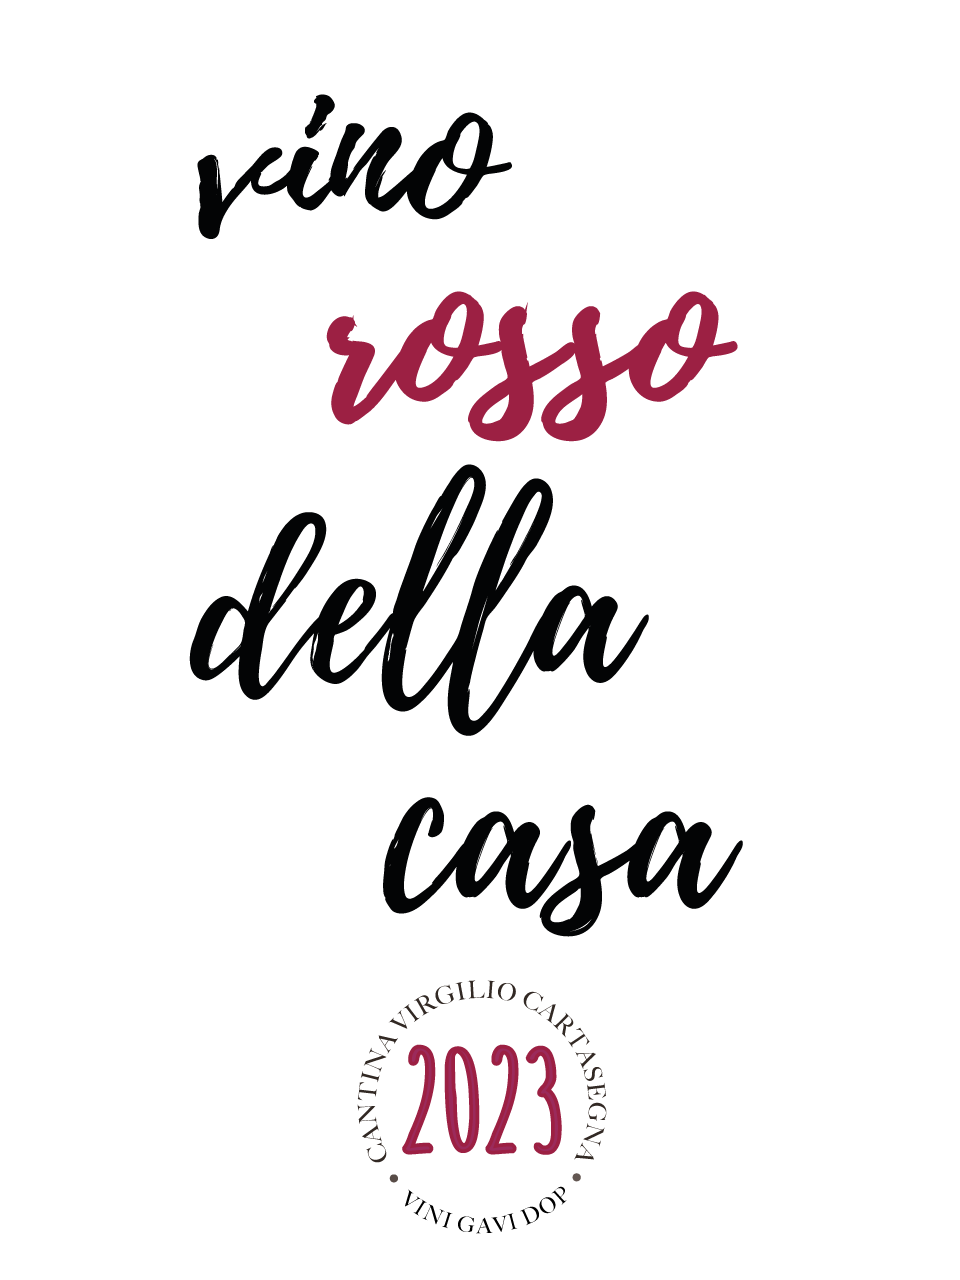 Etichetta per bottiglie di vino: sotto alla scritta "vino rosso della casa" è indicato l'anno 2023